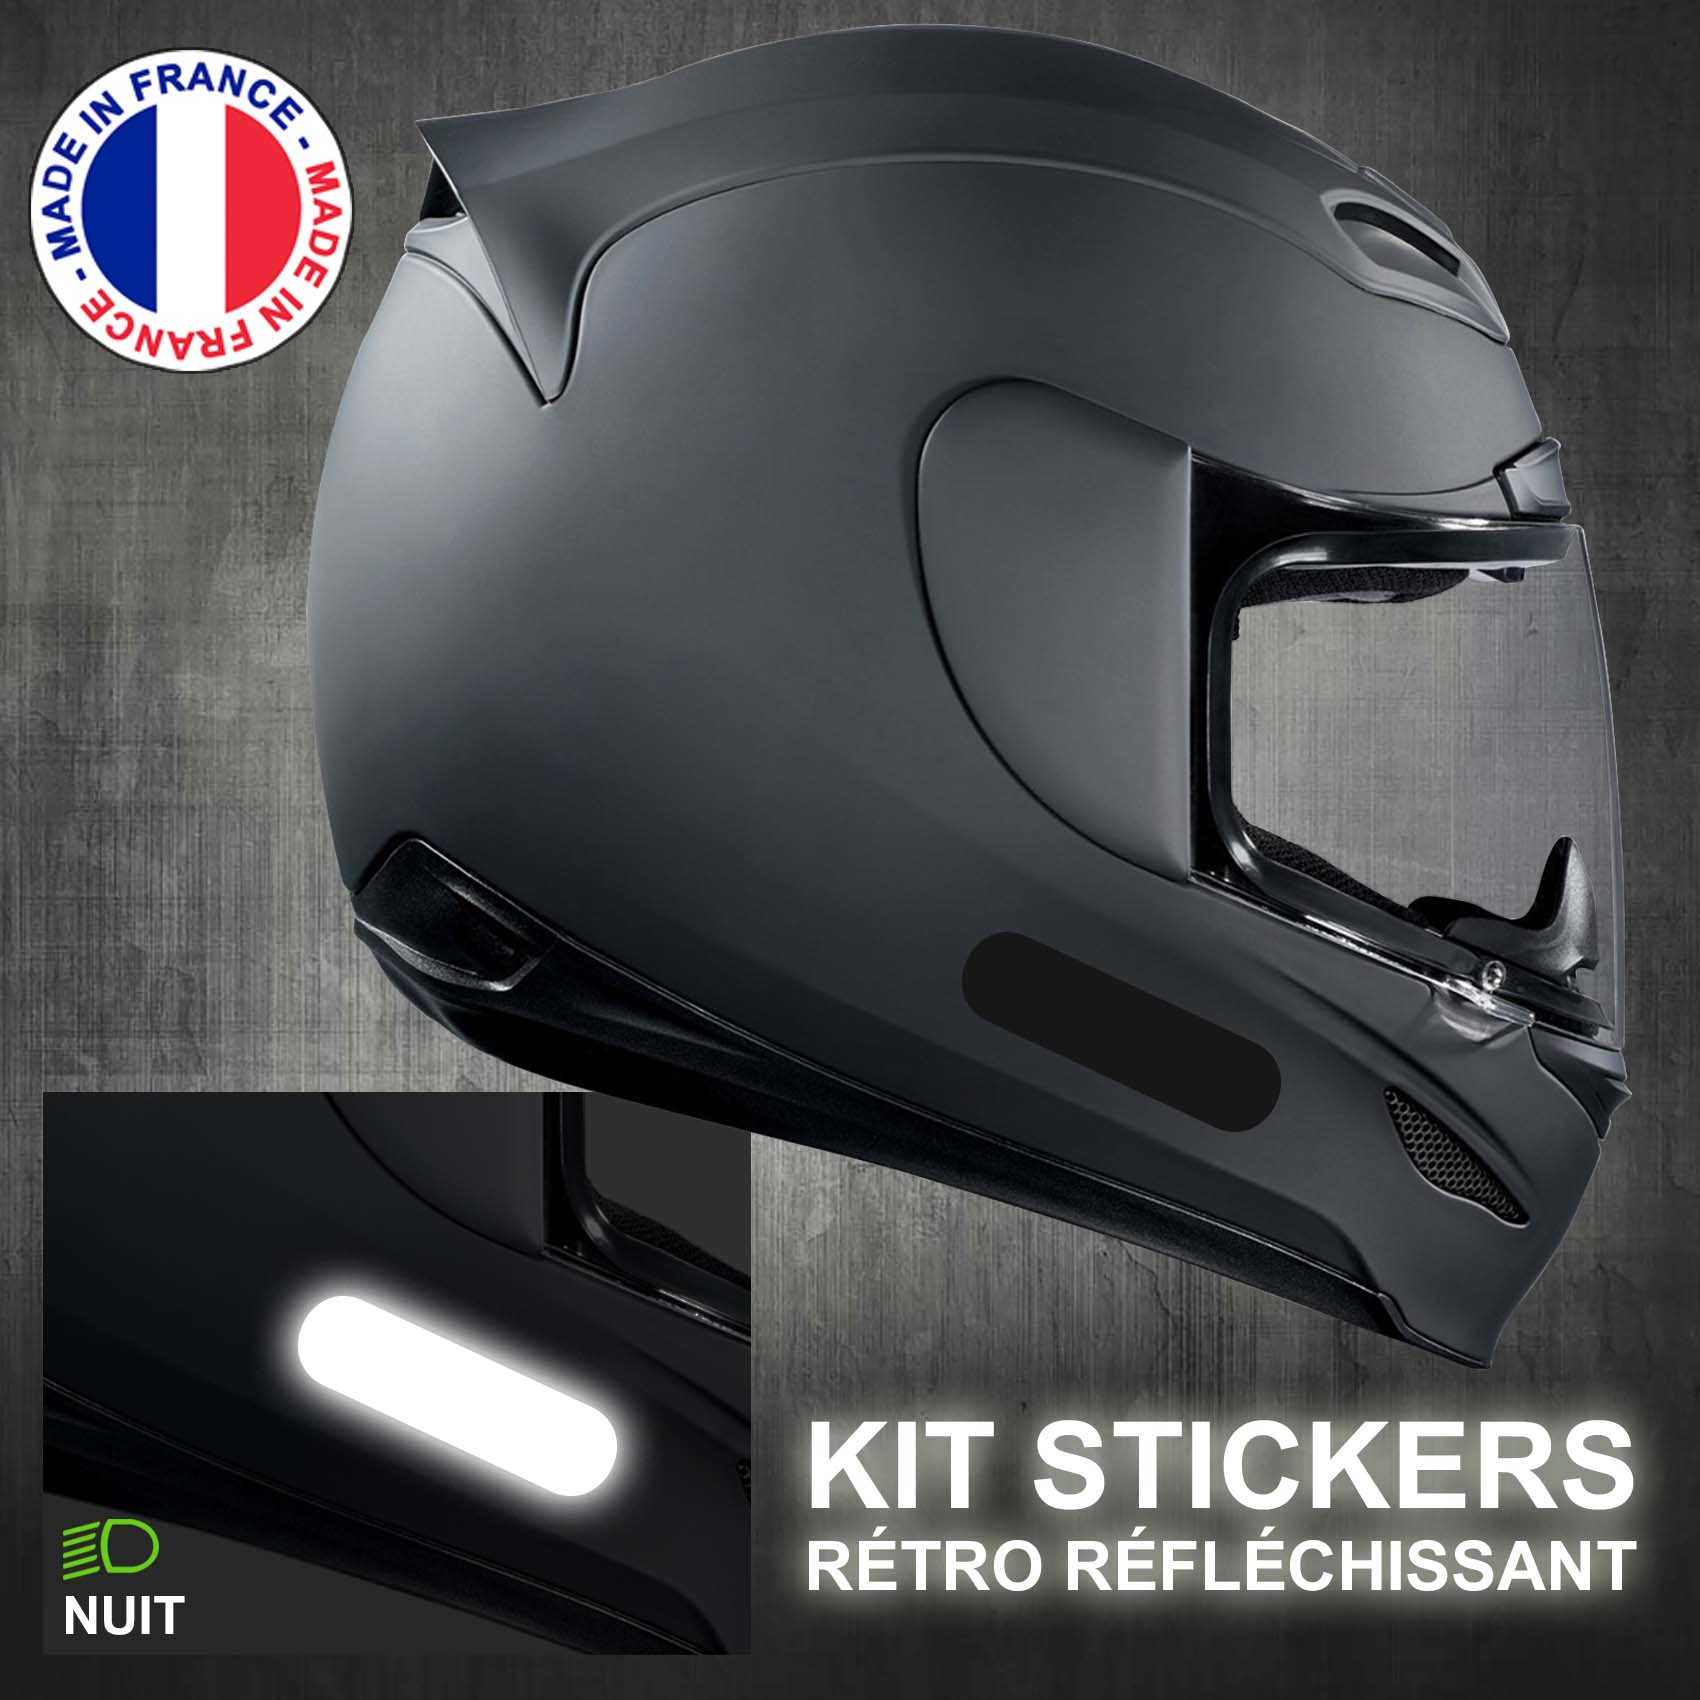 Kit 4 bandes stickers standard rétro réfléchissants casque moto REFLECTIVE  NOIR